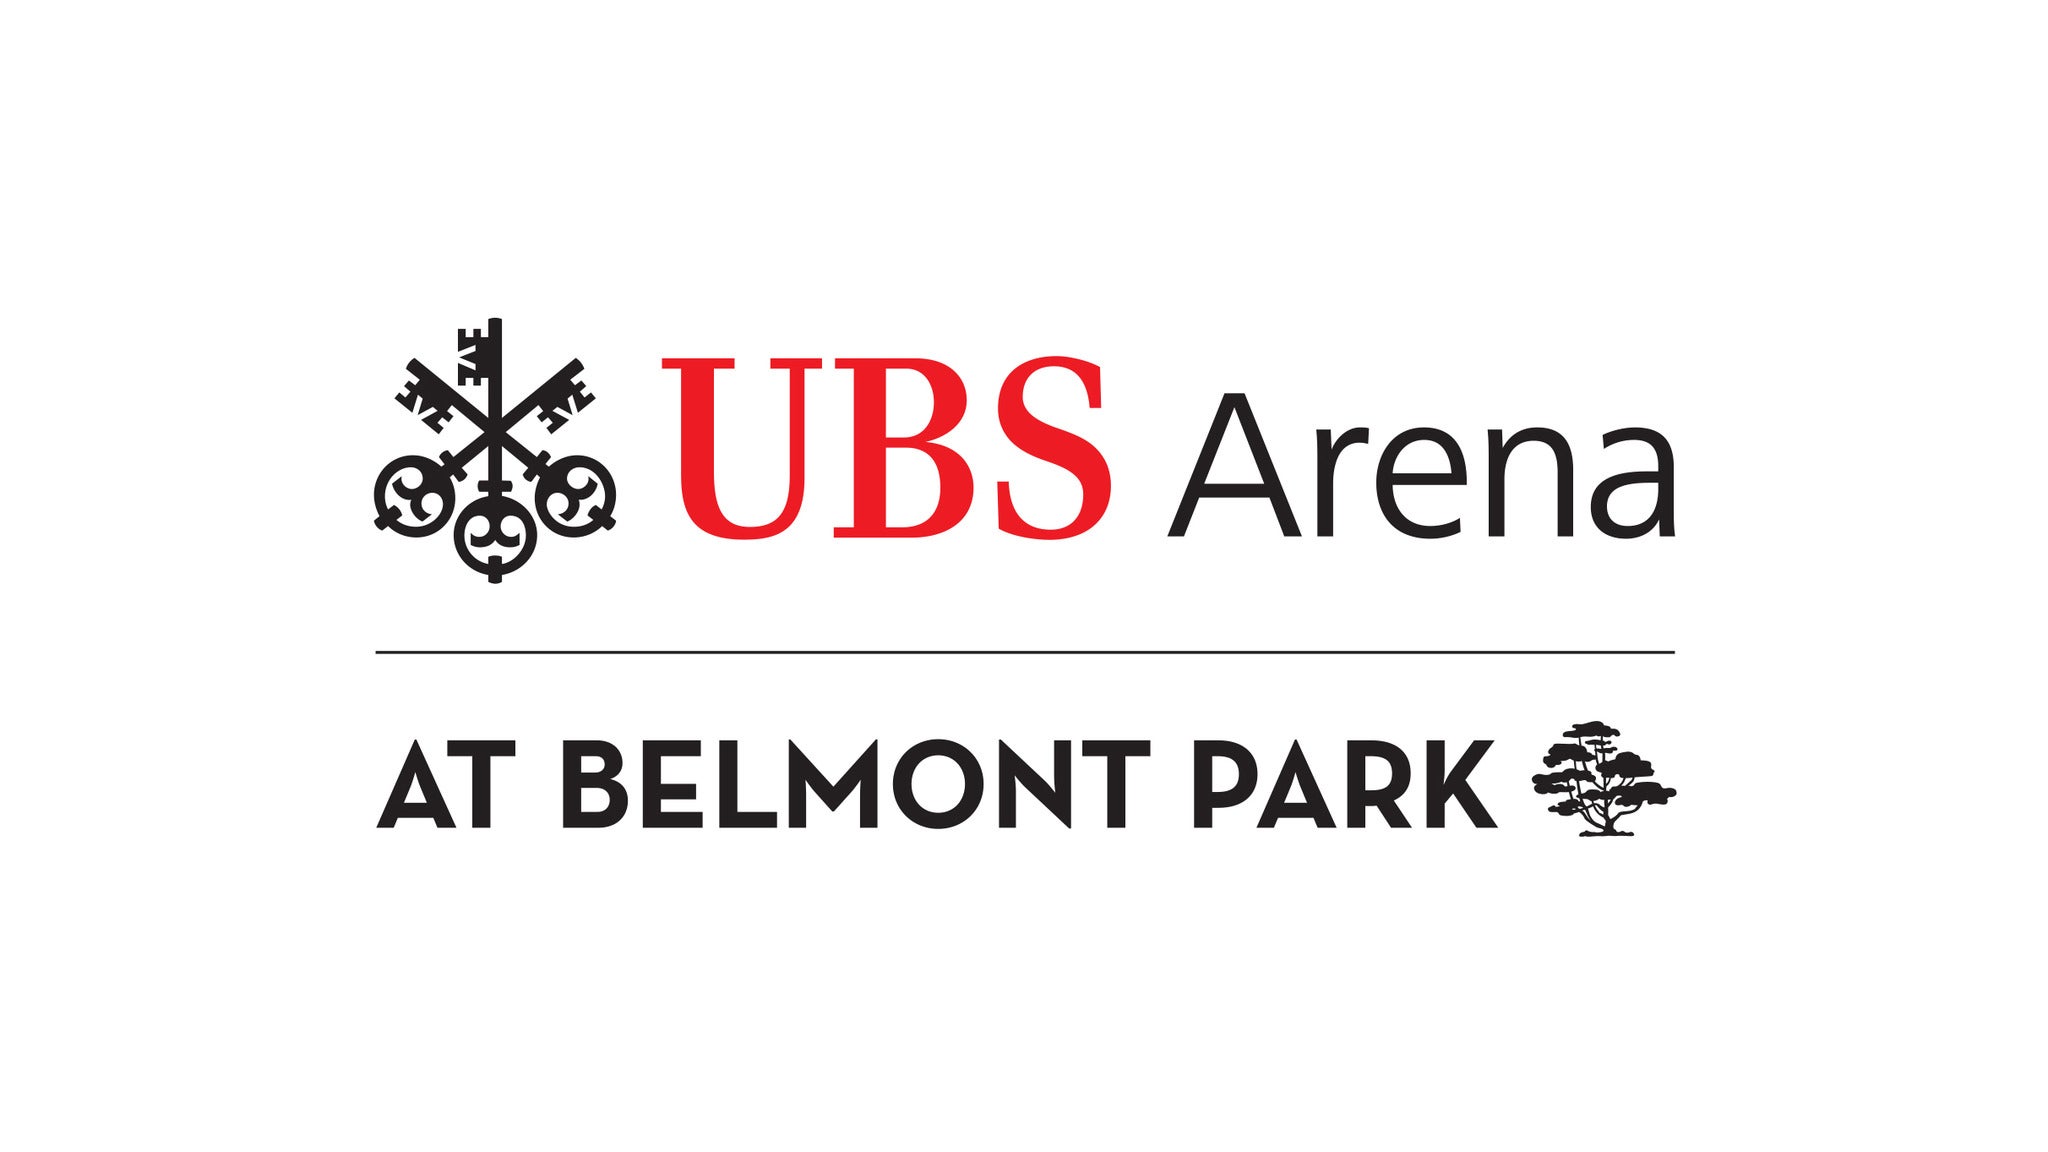 UBS Arena Parking presale information on freepresalepasswords.com